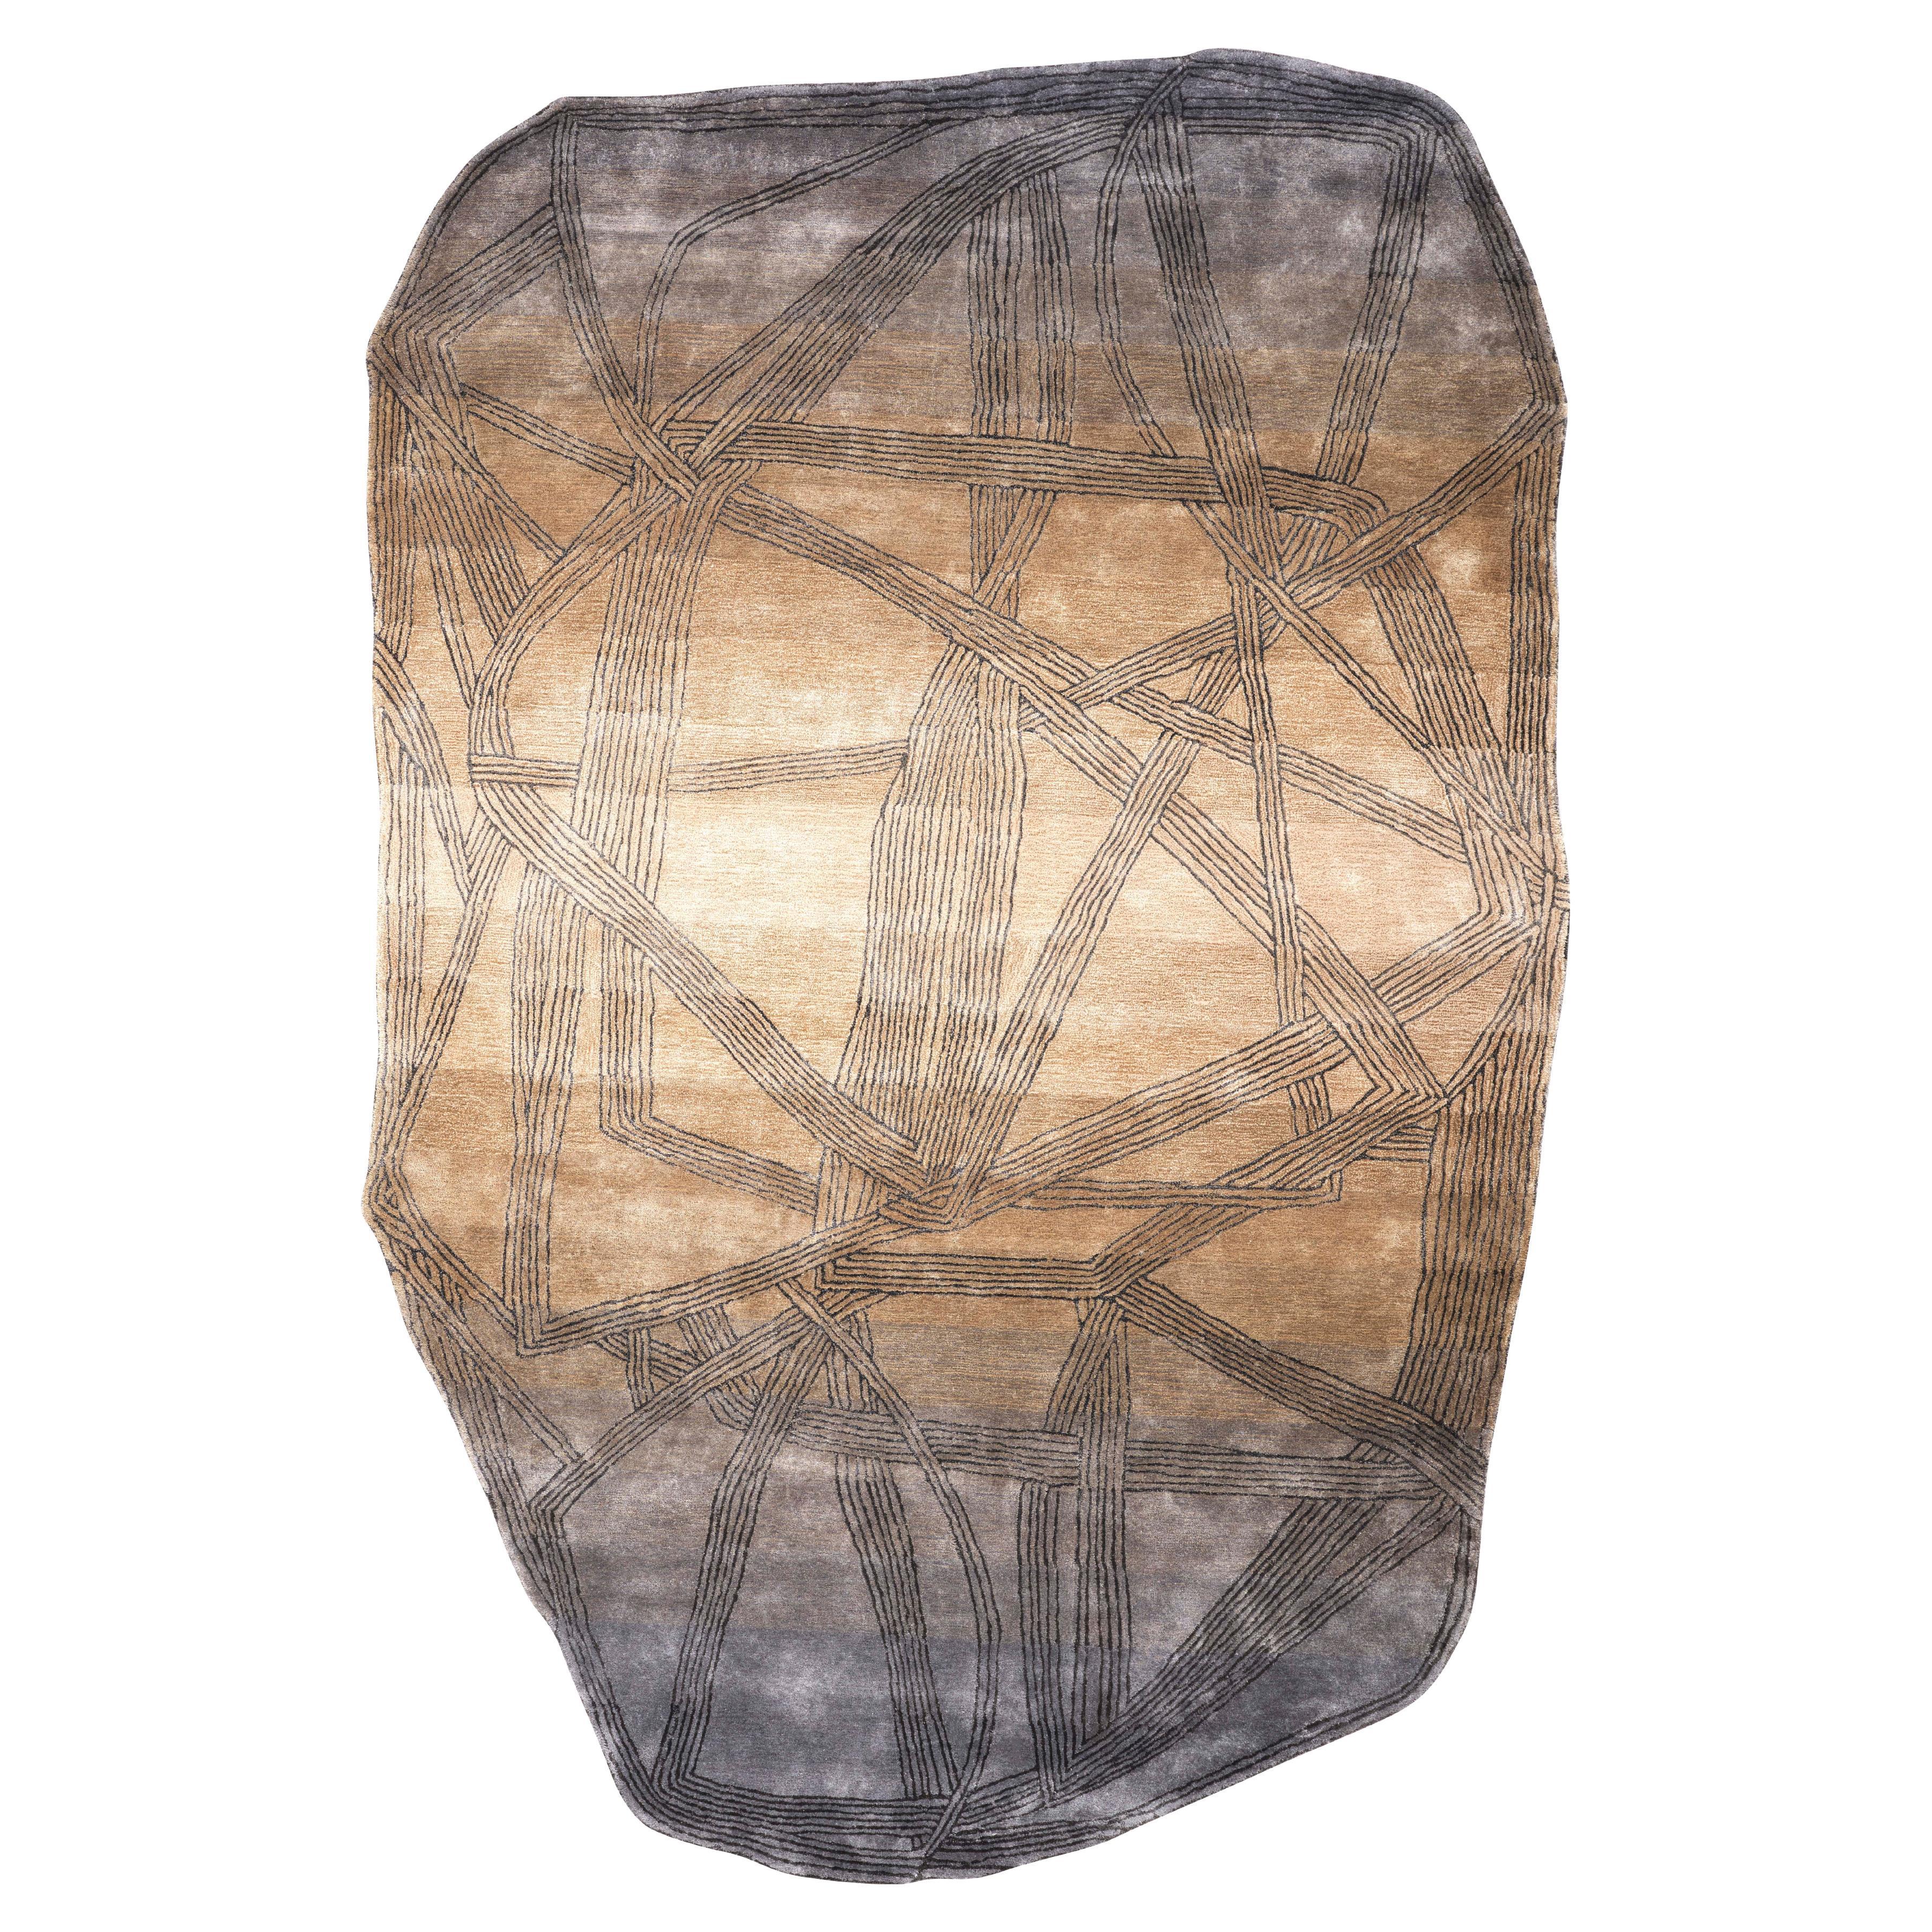 Tapis LENNOX en soie de forme moderne, touffeté à la main, couleur frêne et or, fait main